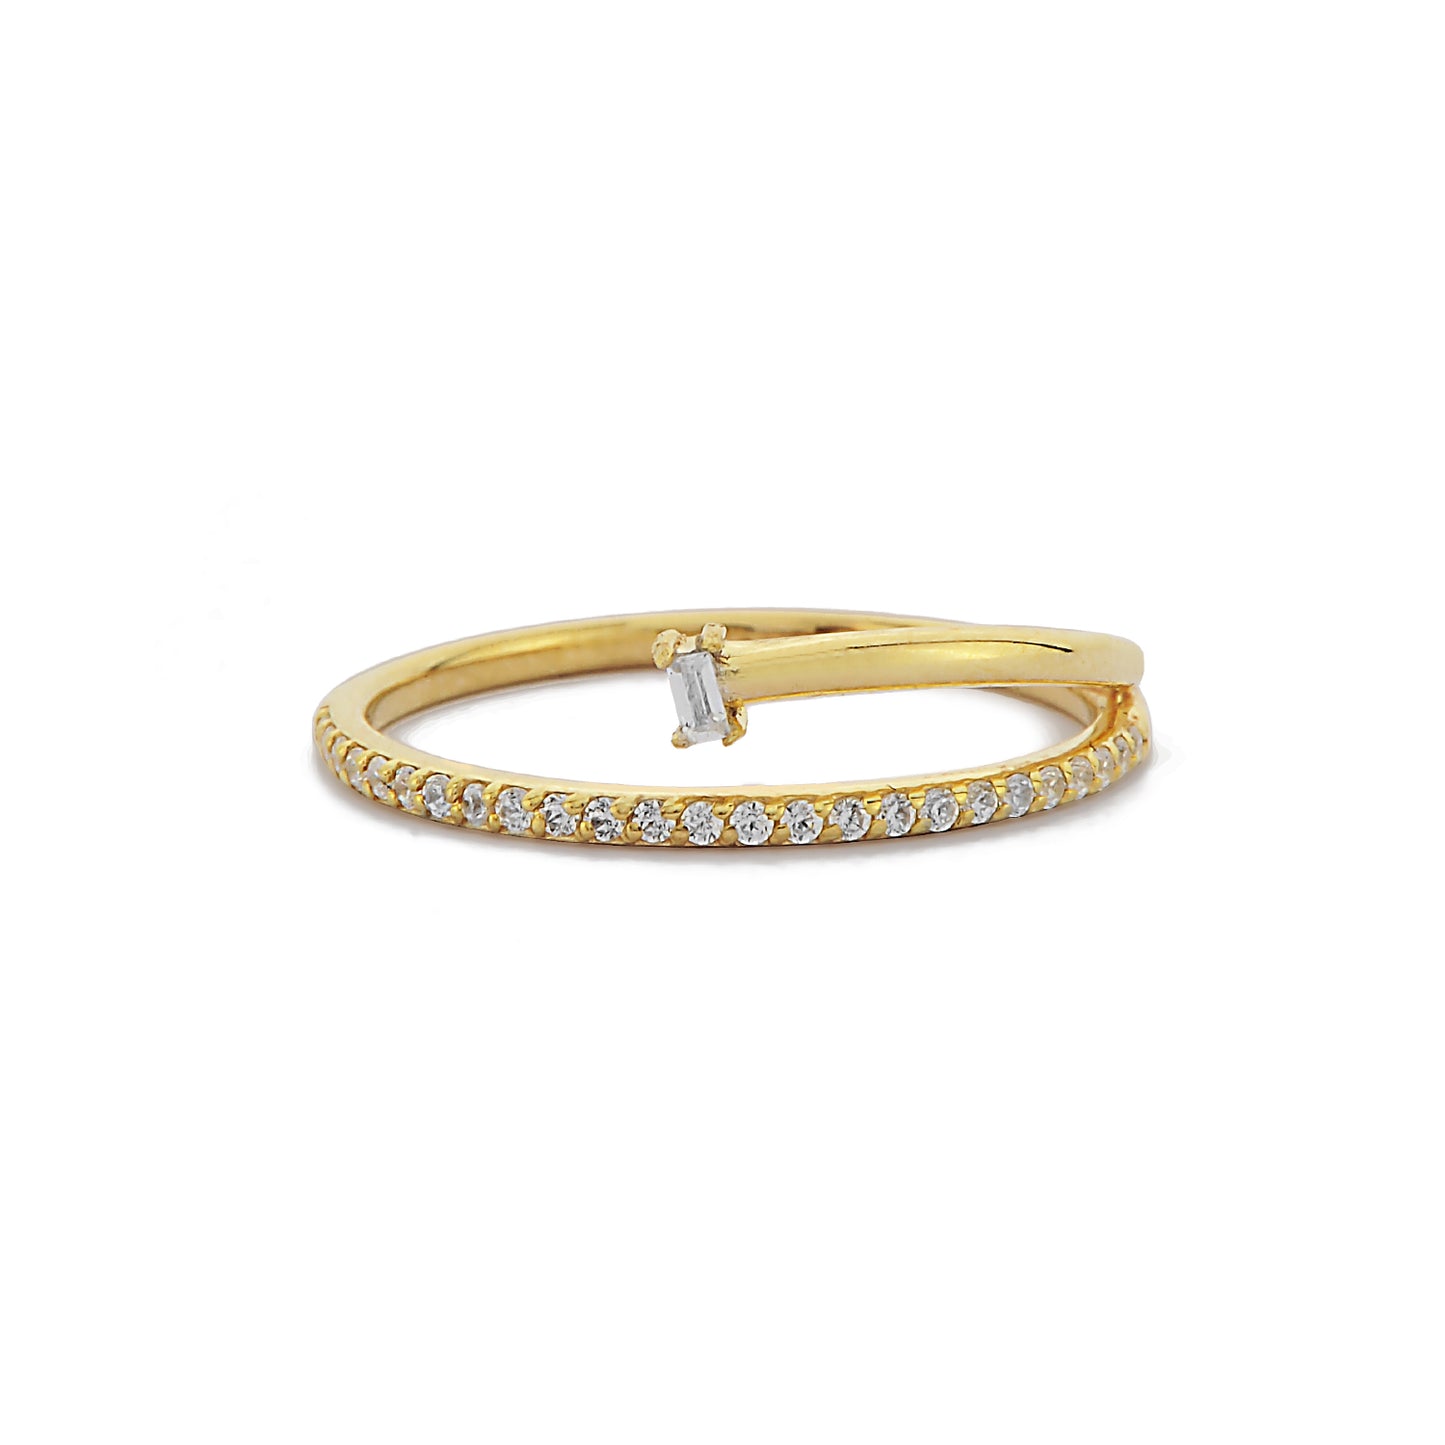 Stokbrood en Ronde Cluster Diamanten Gouden Ring, Versterker Diamanten Band Ring Bruiloft, op Maat Gemaakte Handgemaakte 14k Massief Gouden Ring